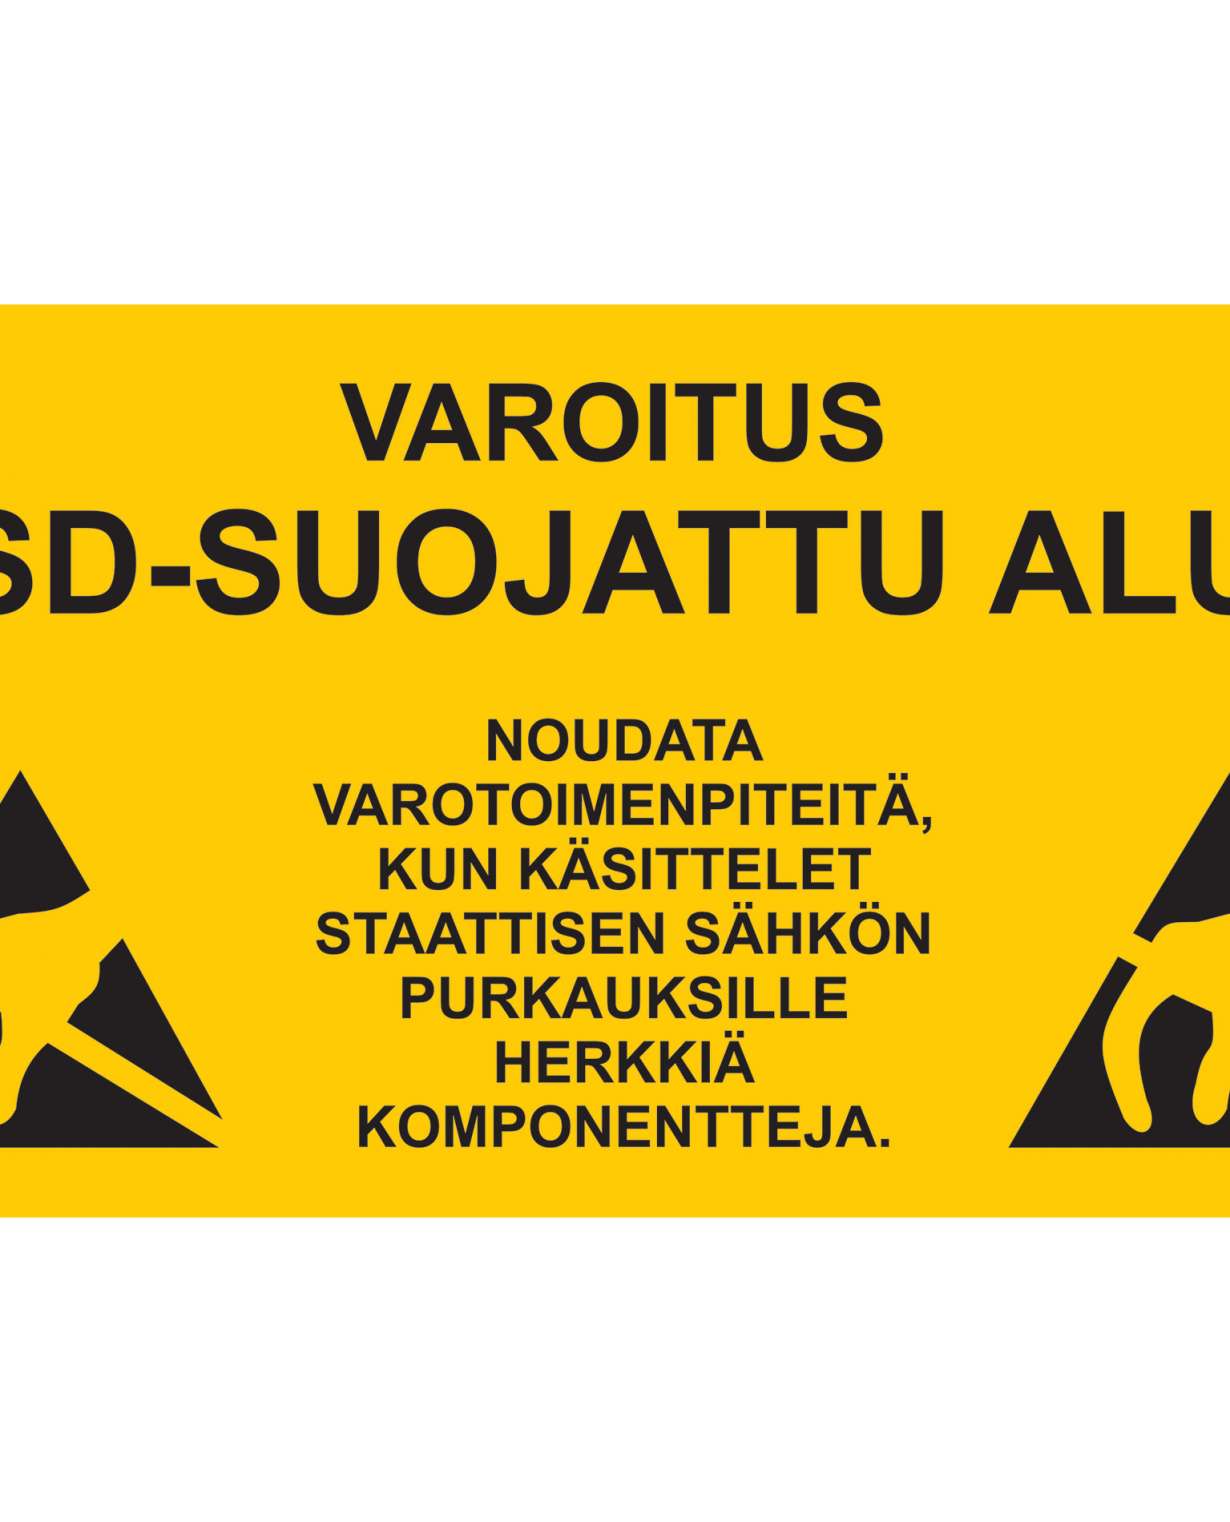 Varoitus Esd-suojattu alue, Ibond alumiini, 400x200 mm